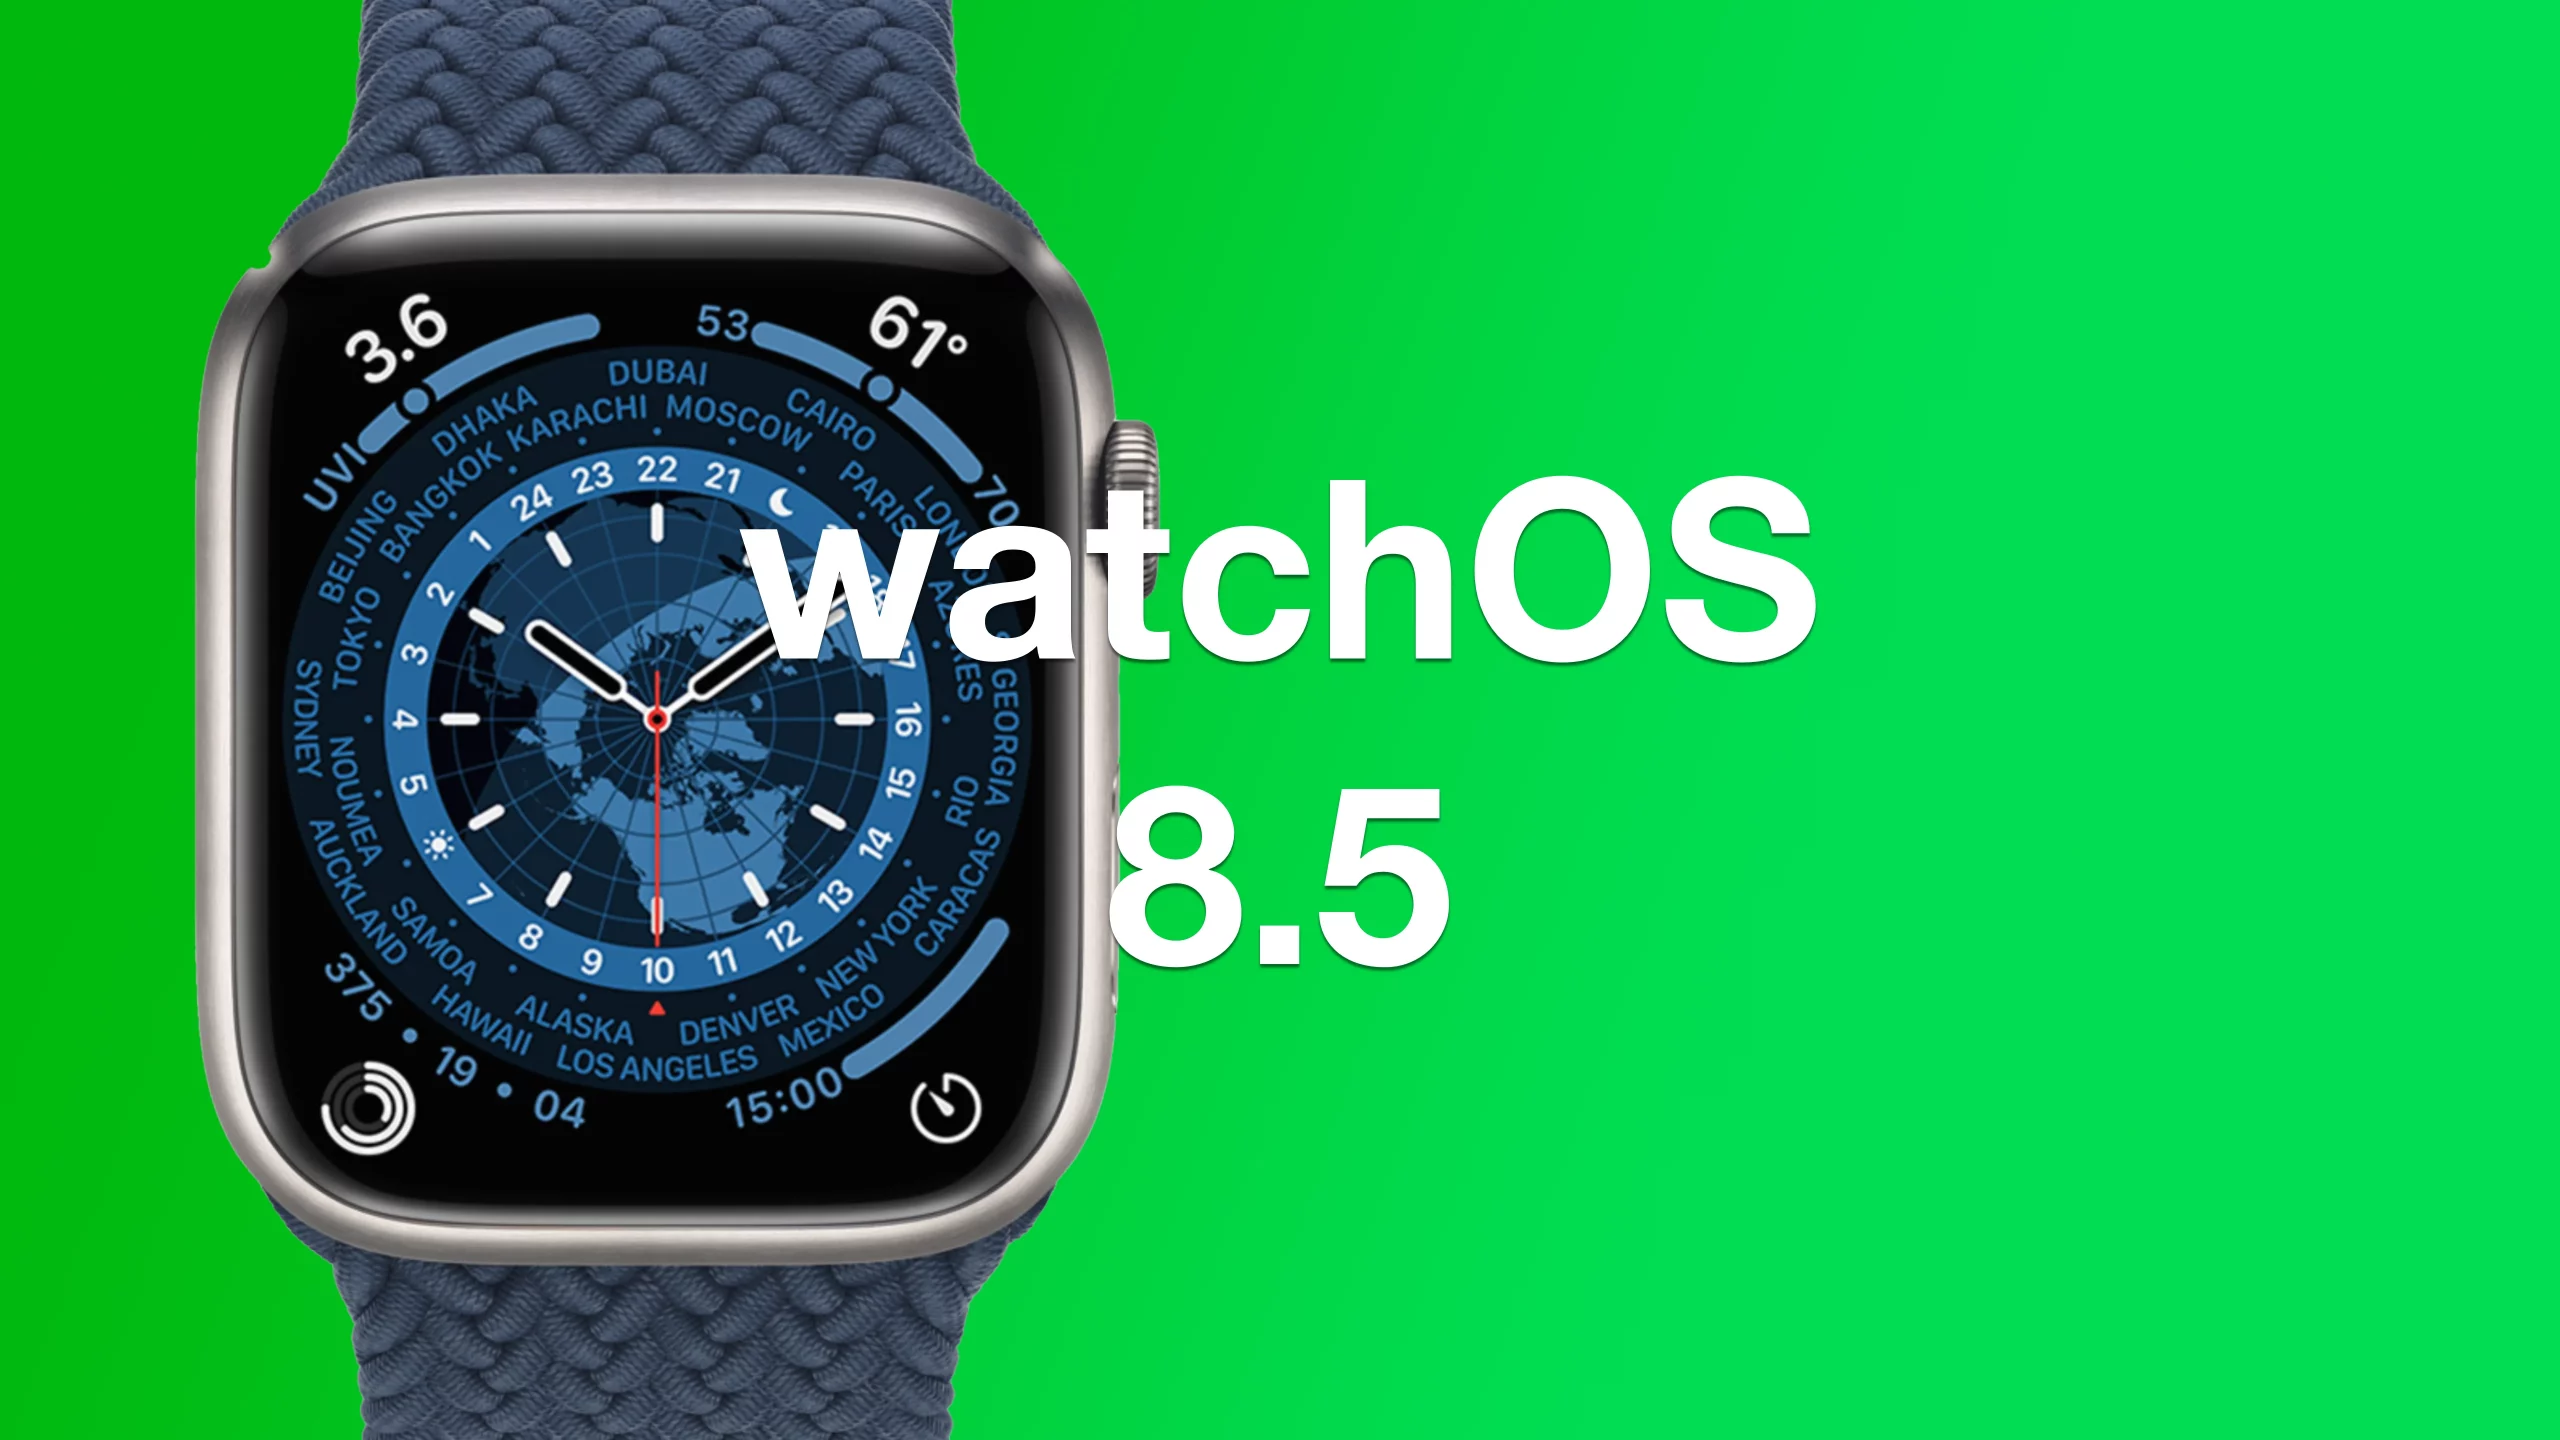 watchOS 8.5